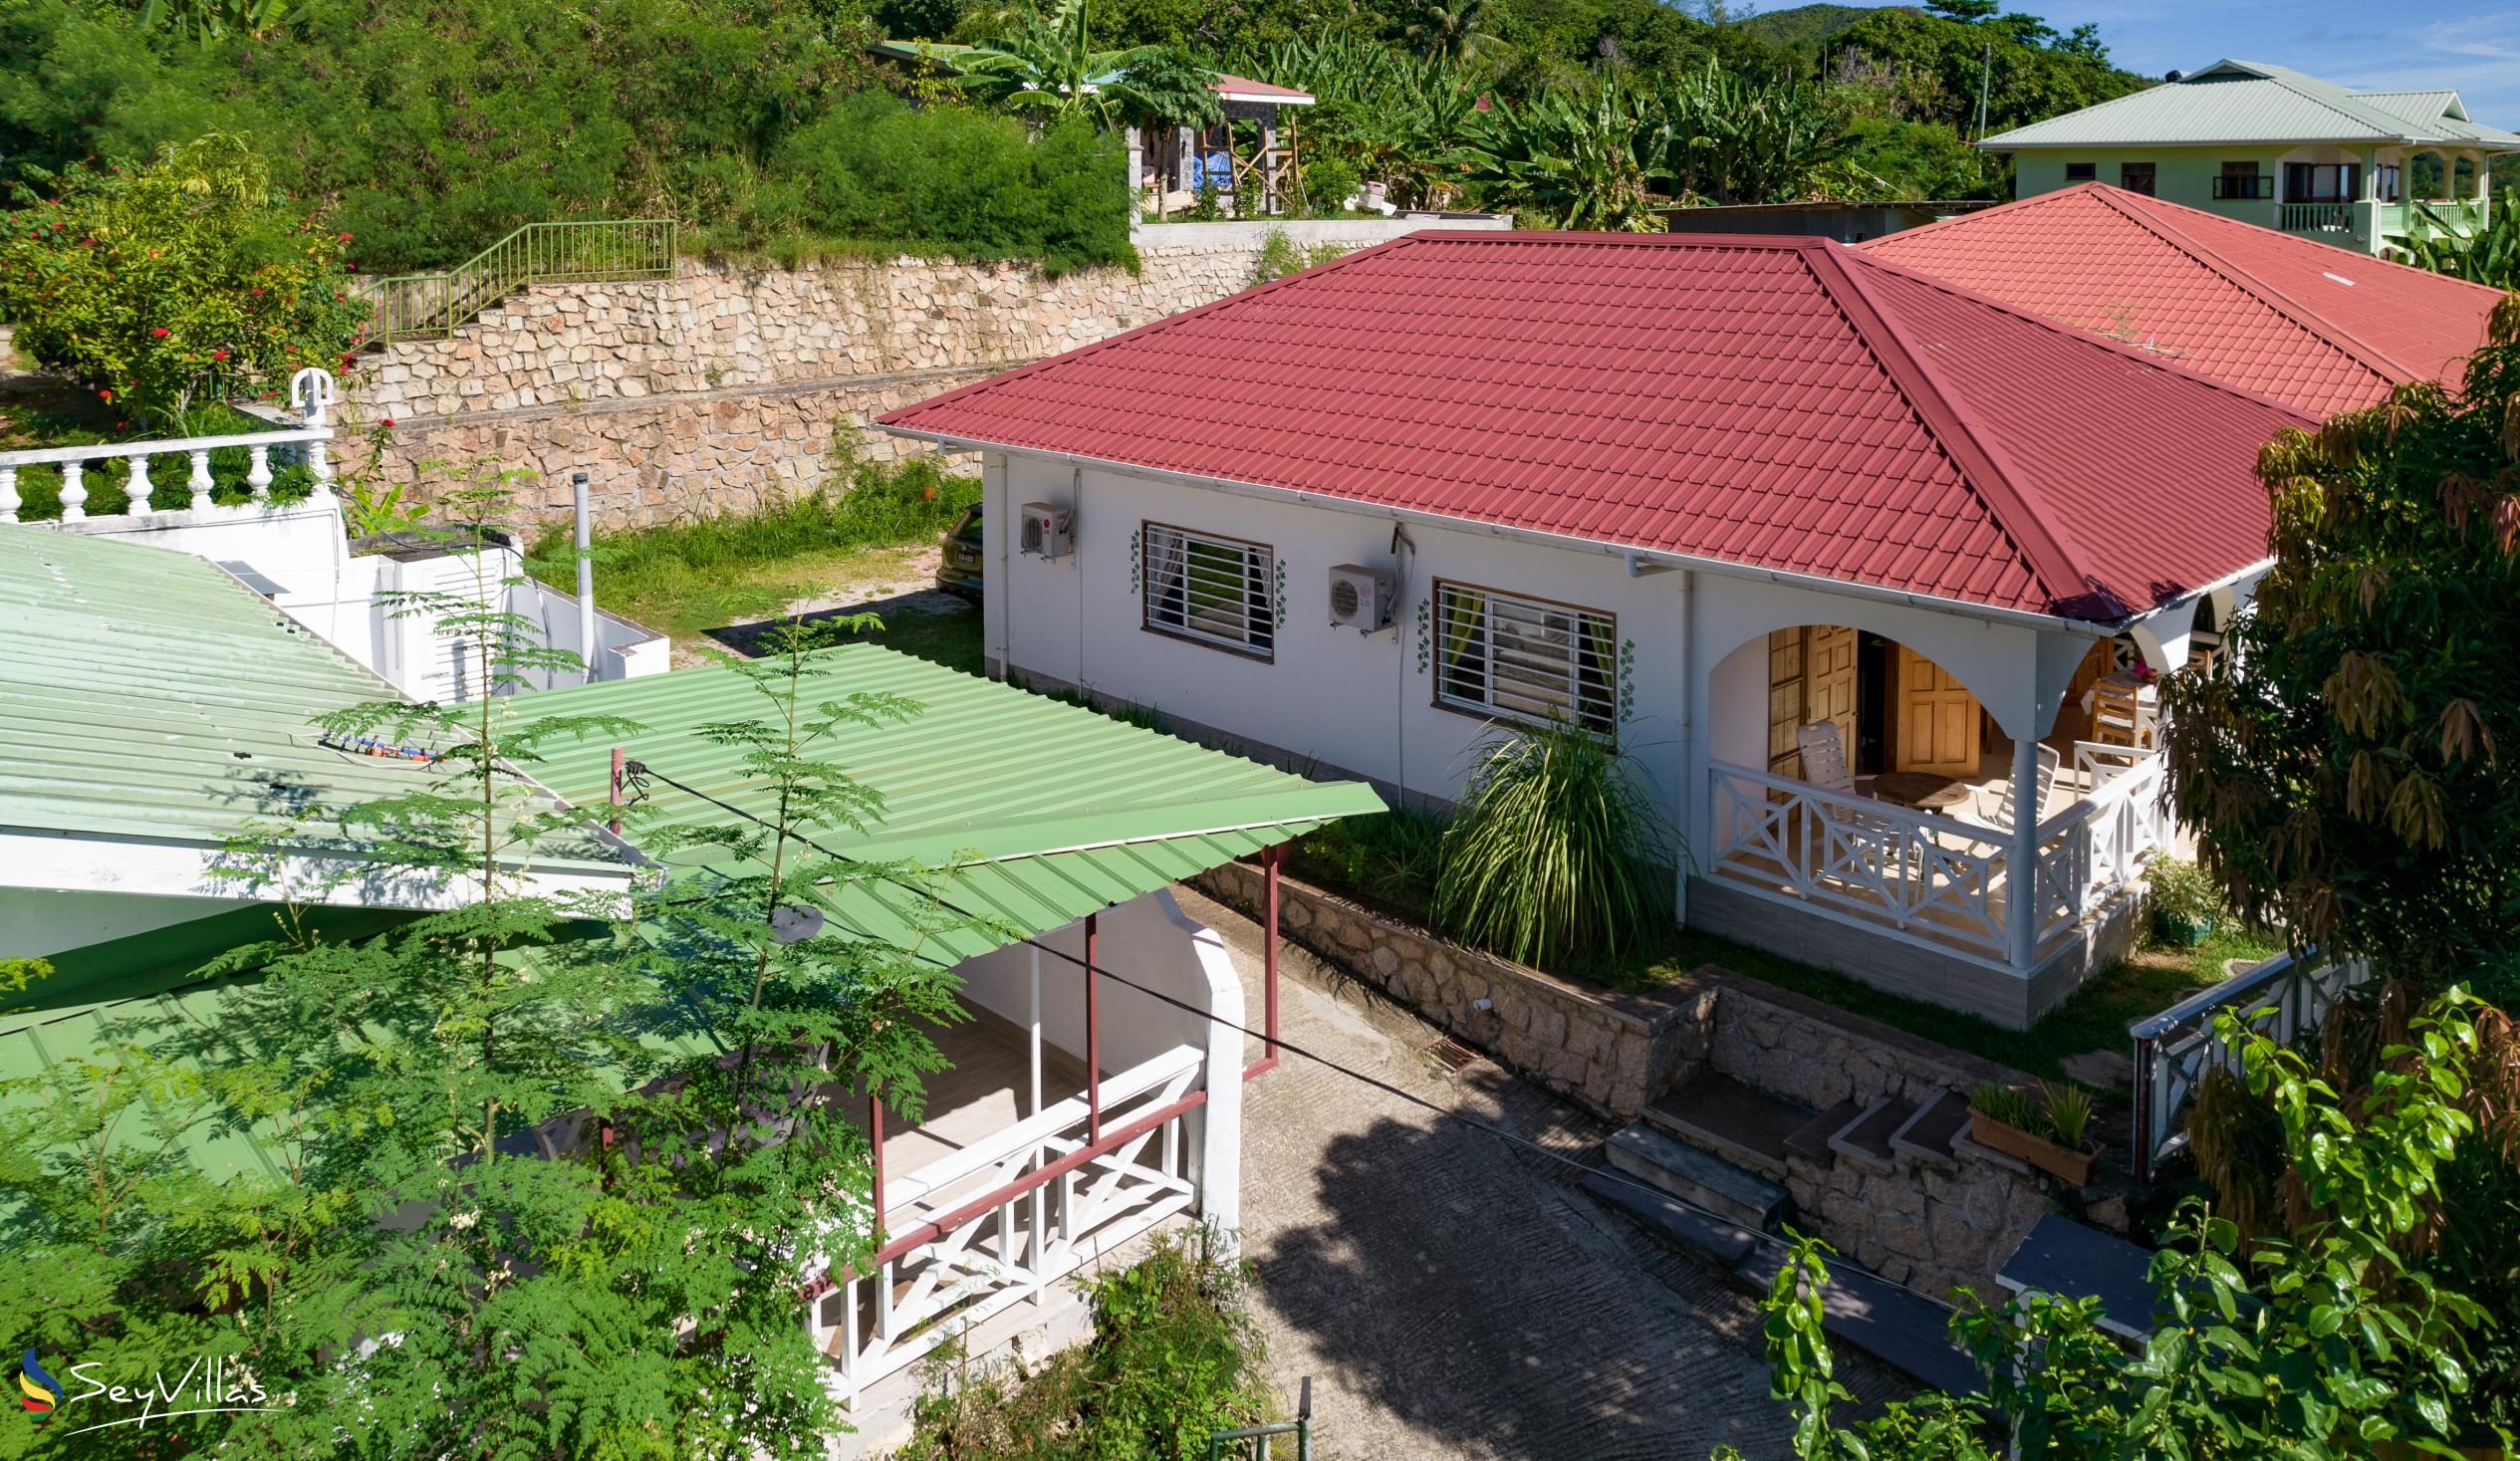 Foto 5: Baie Ste Anne Maison des Vacanze - Aussenbereich - Praslin (Seychellen)